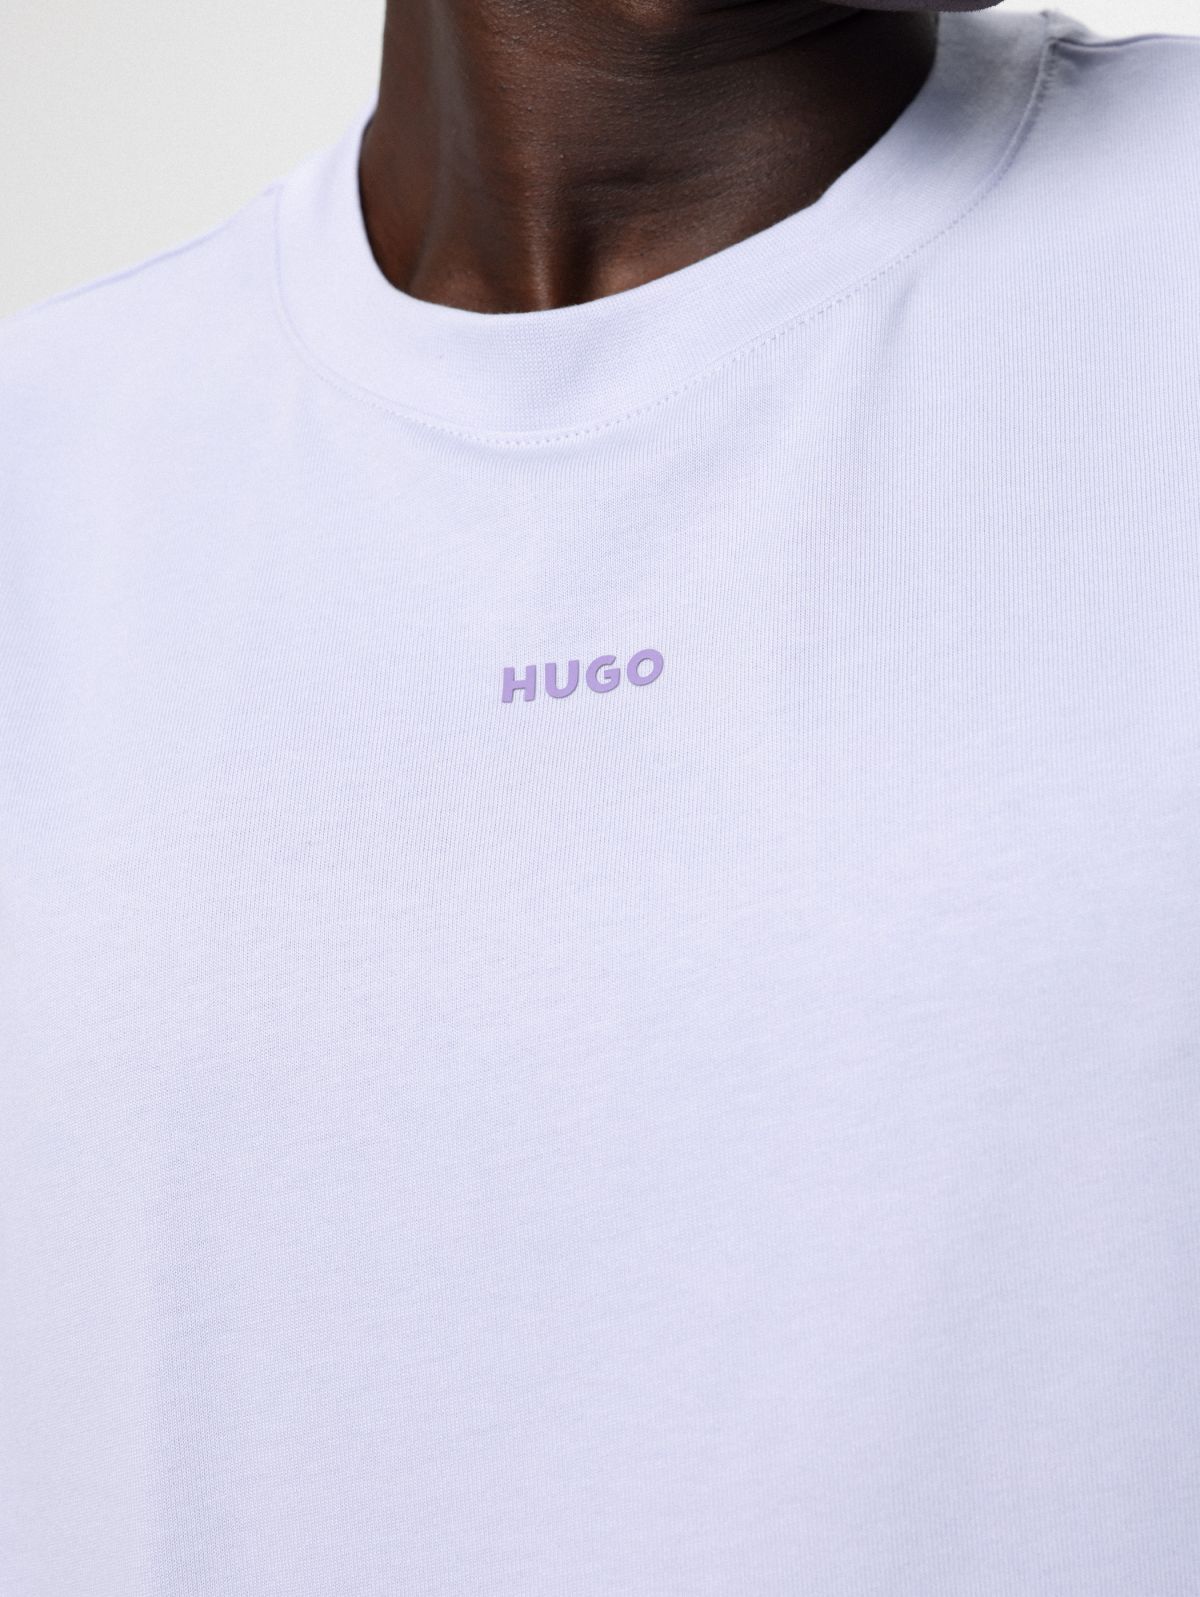  טי שירט עם הדפס לוגו של HUGO